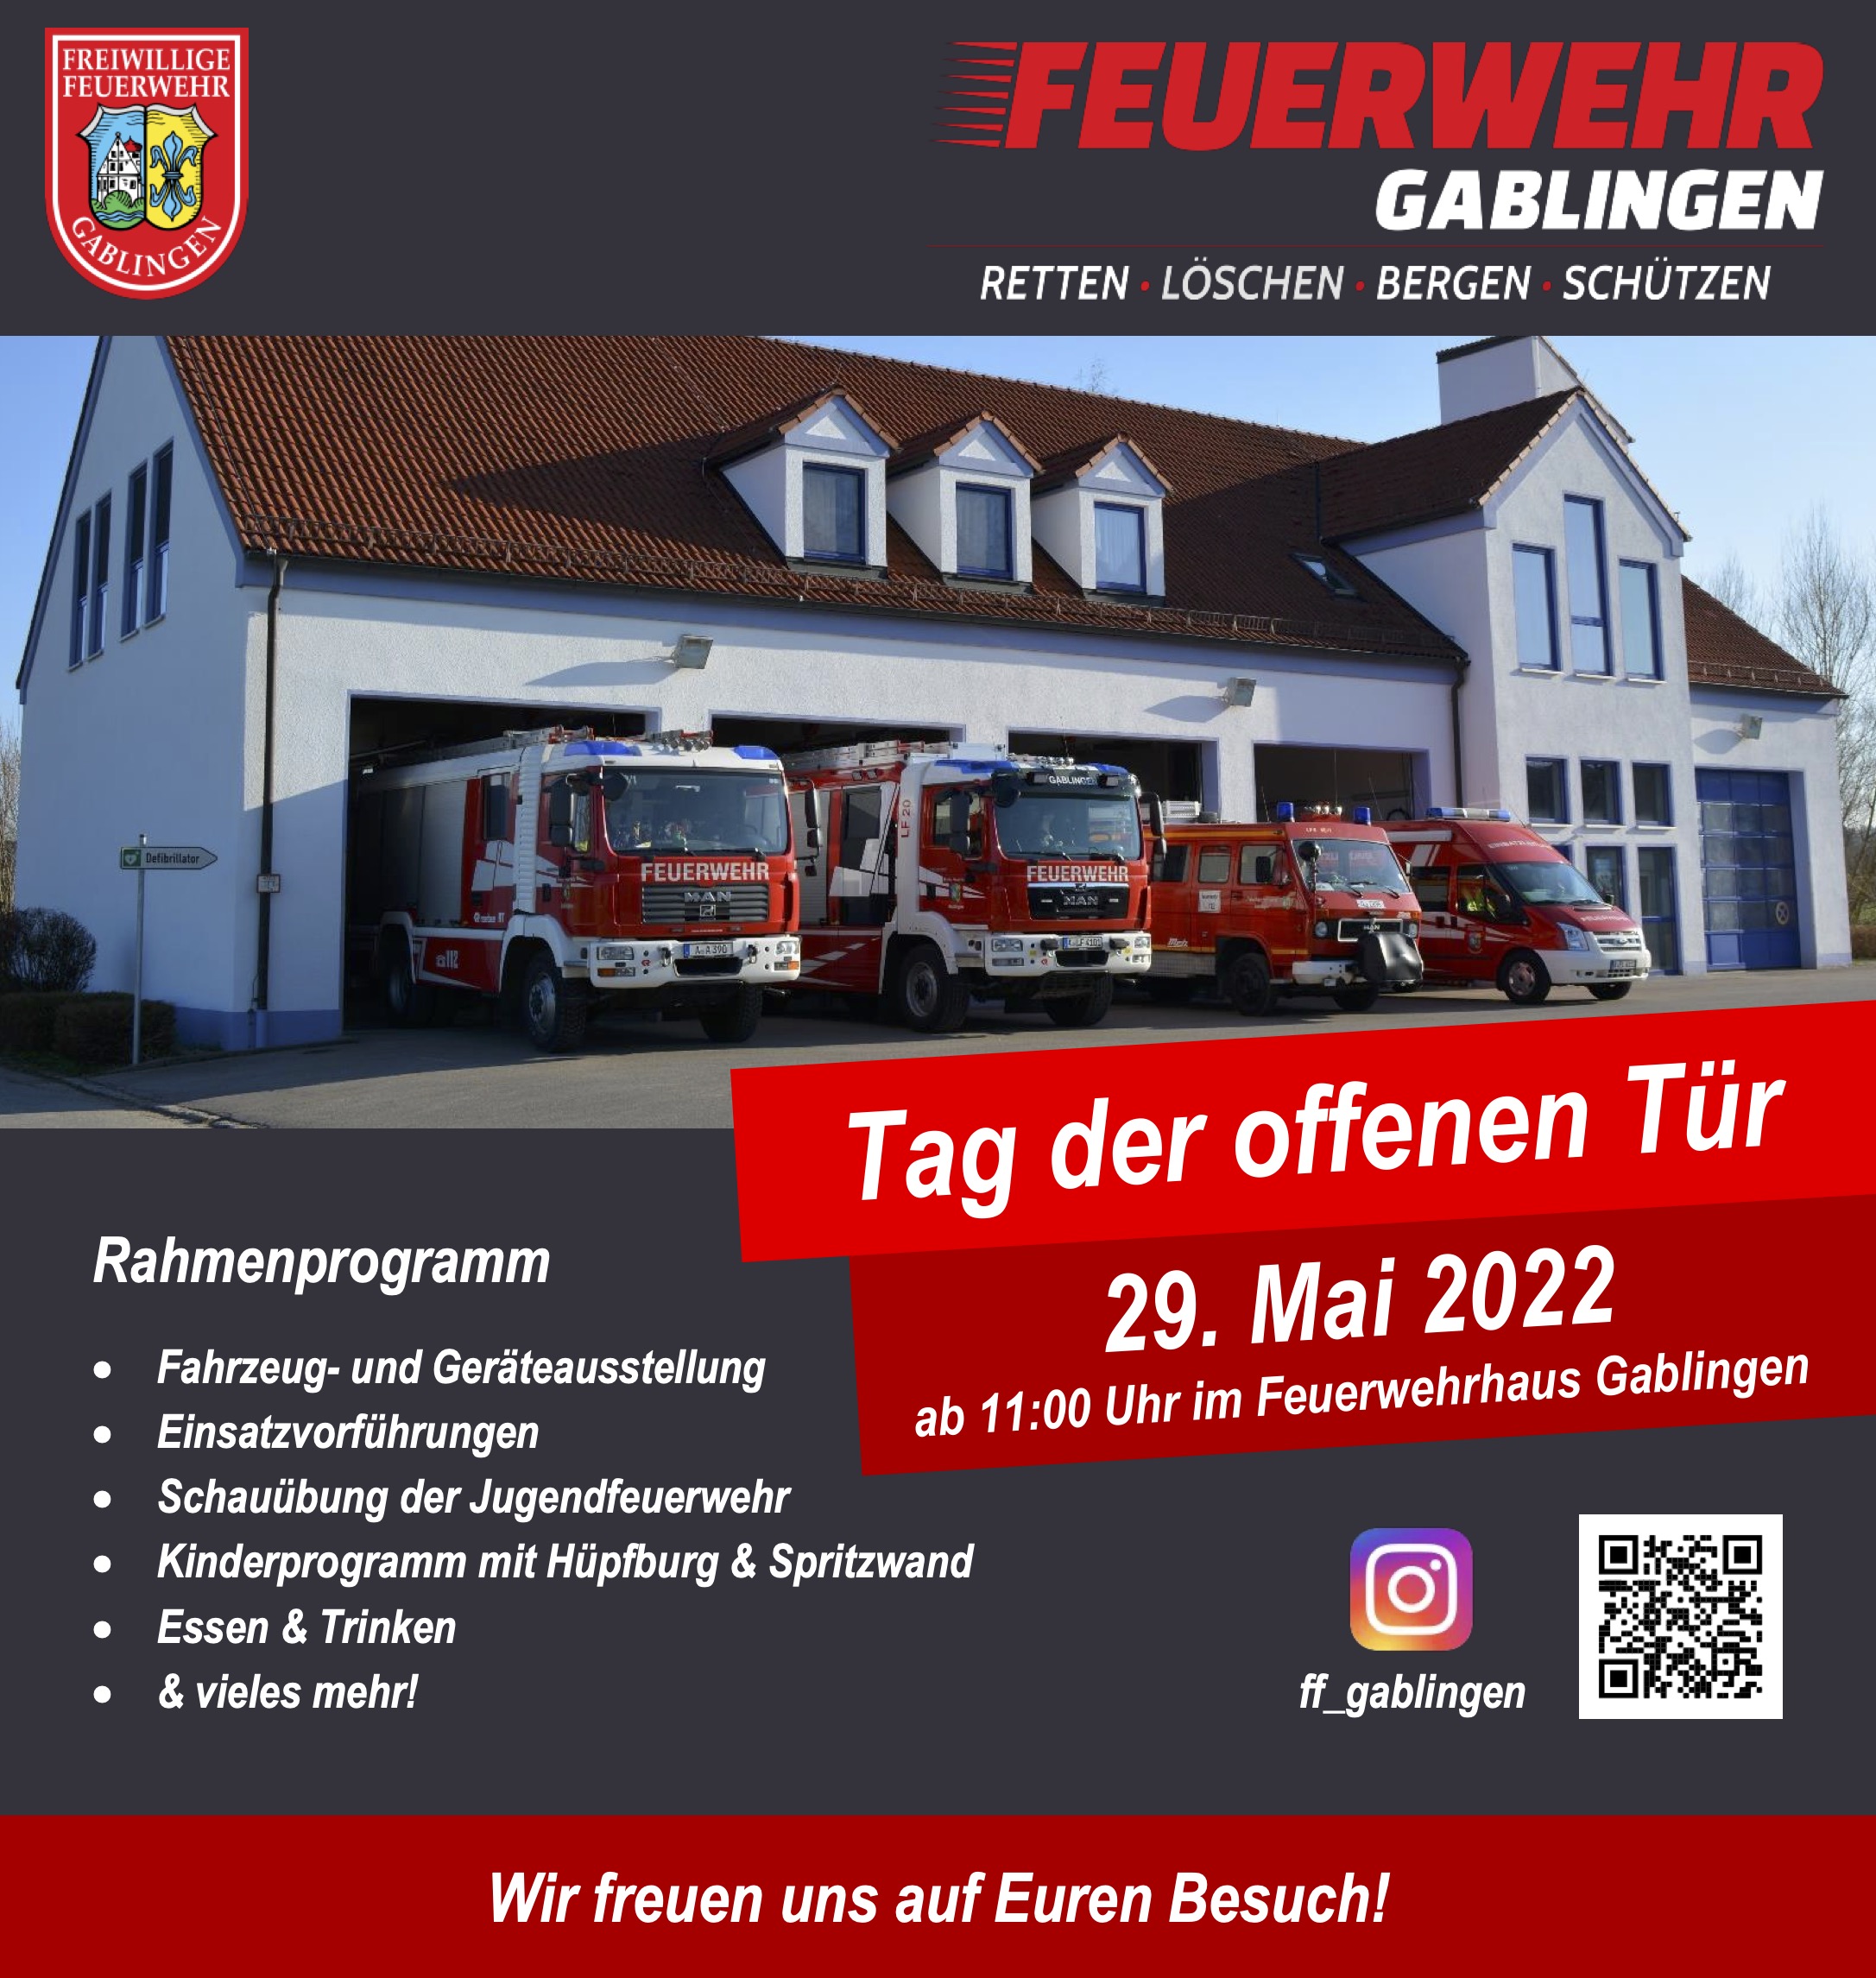 Freiwillige Feuerwehr Gablingen e.V.